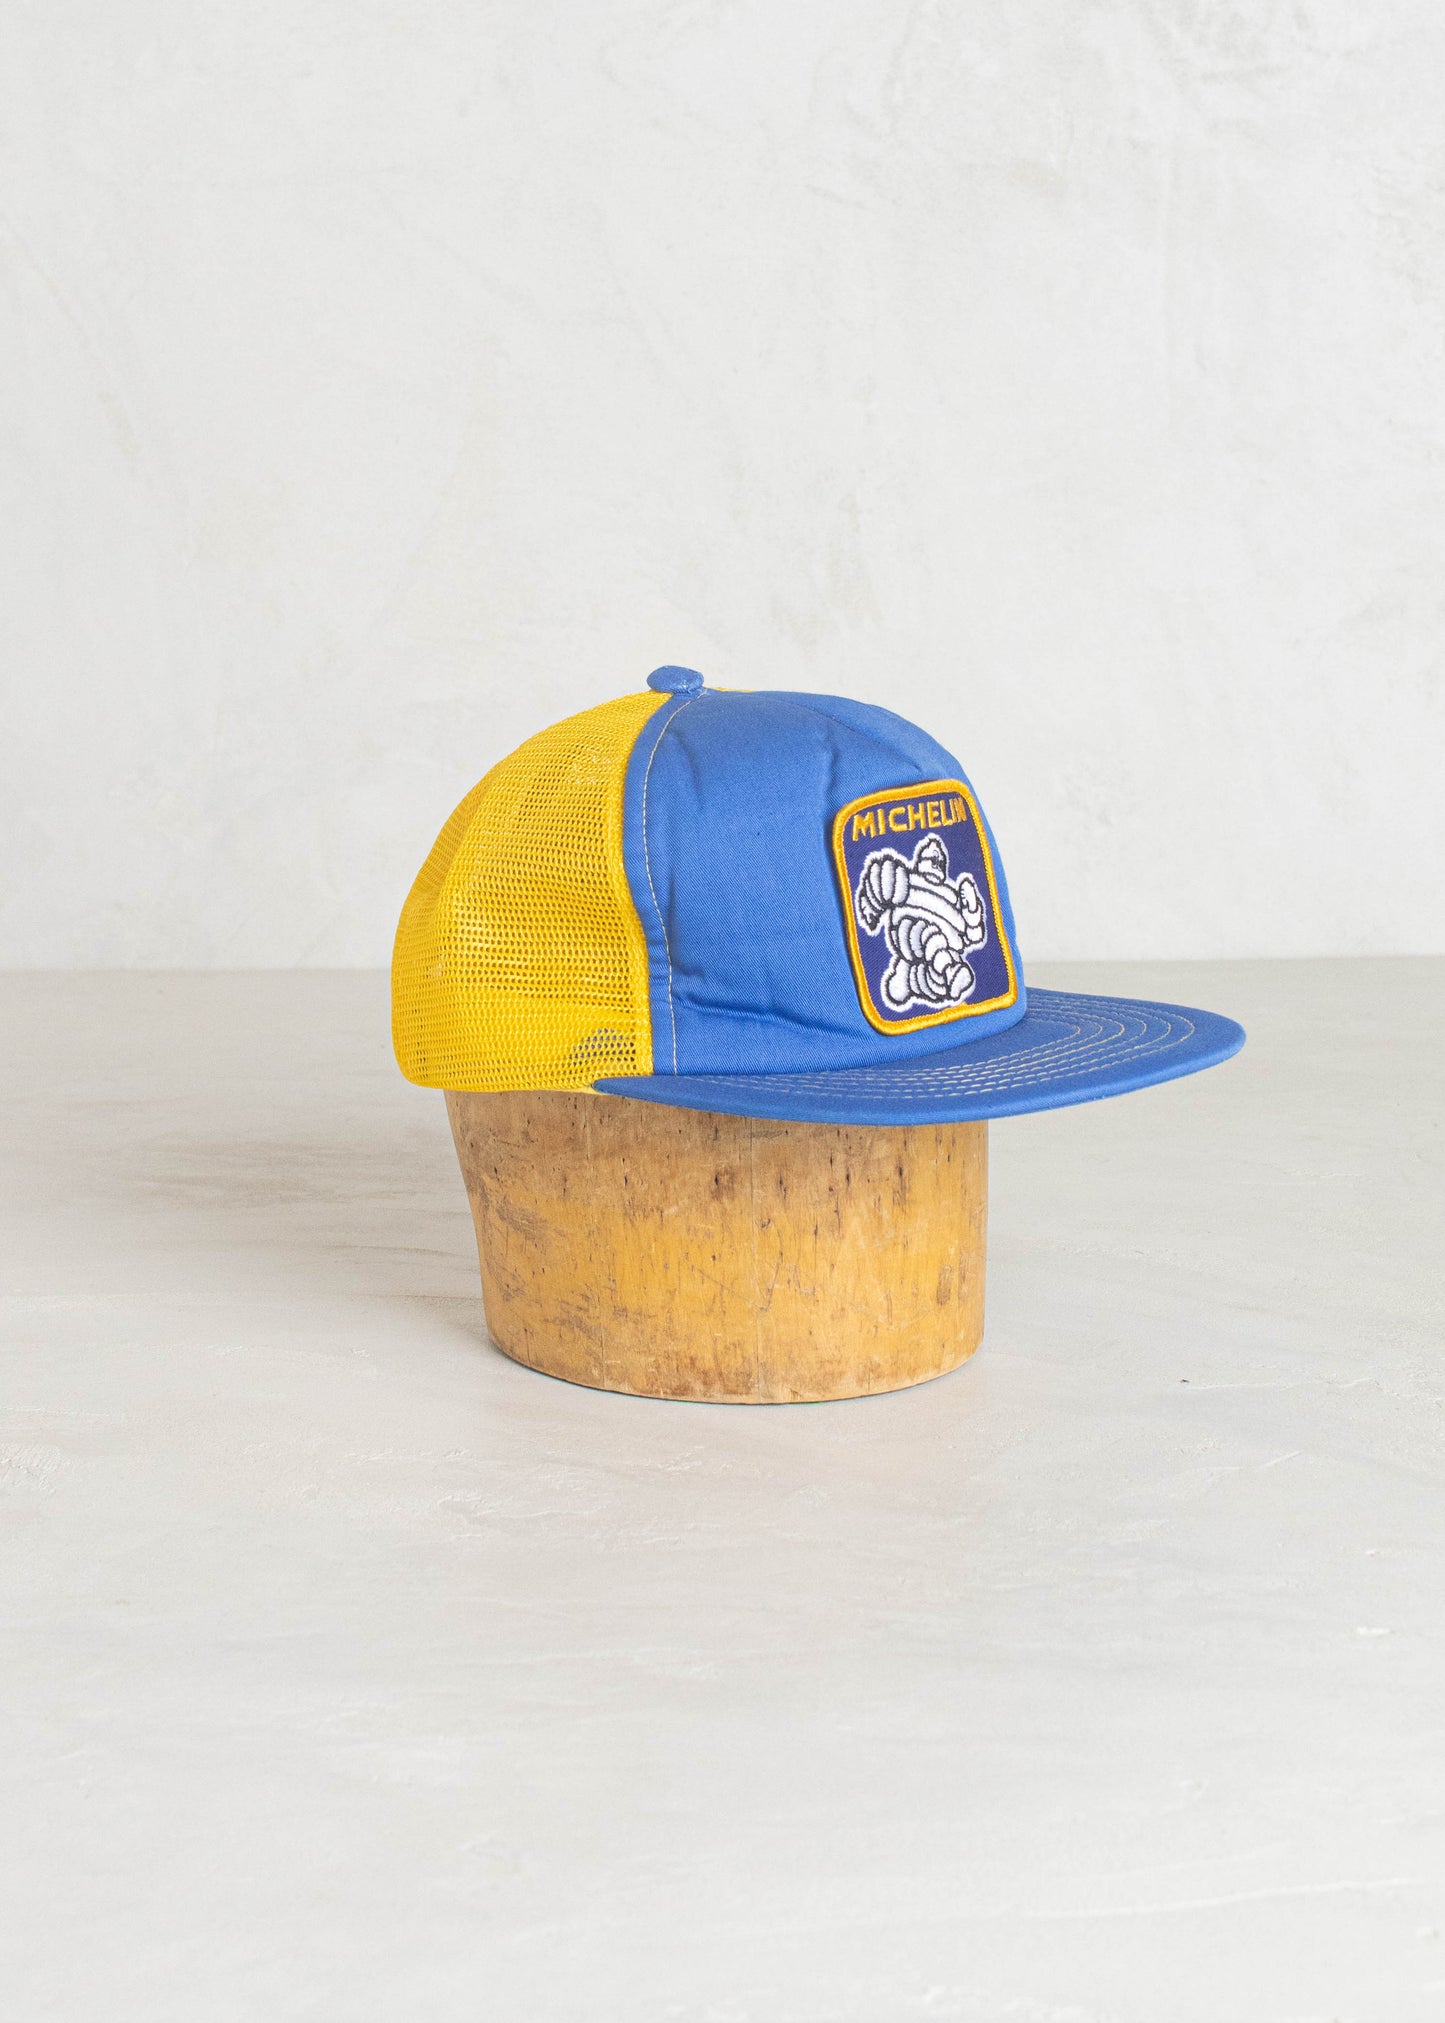 1980s Watson Ad Wear Michelin Trucker Hat